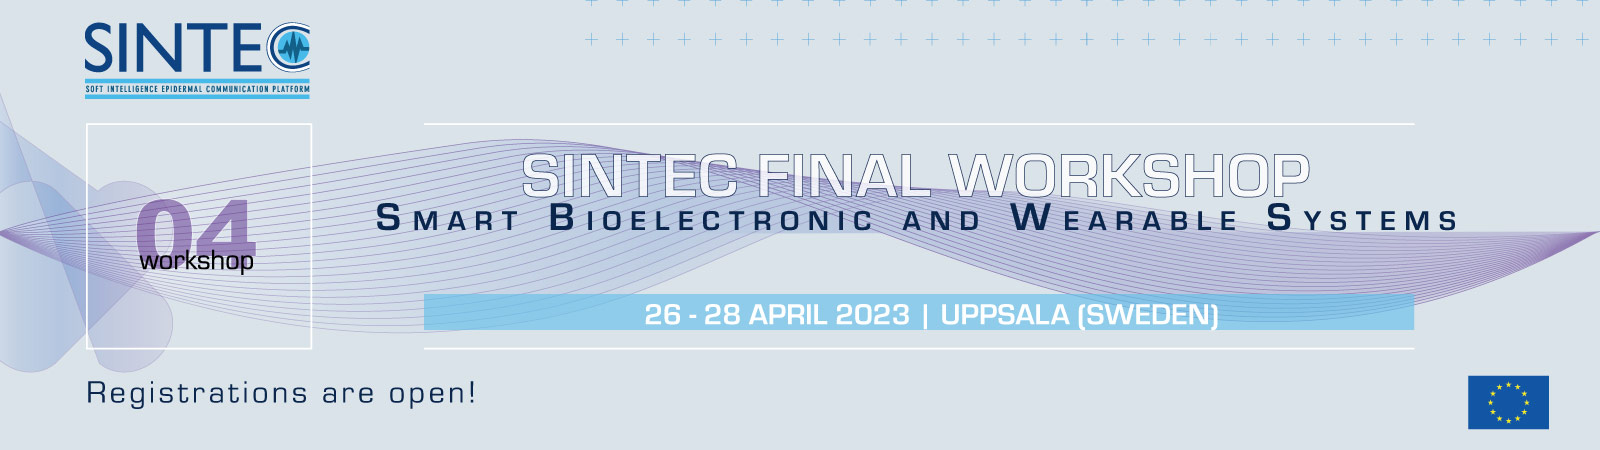 sintec_final_workshop_slide-homepage